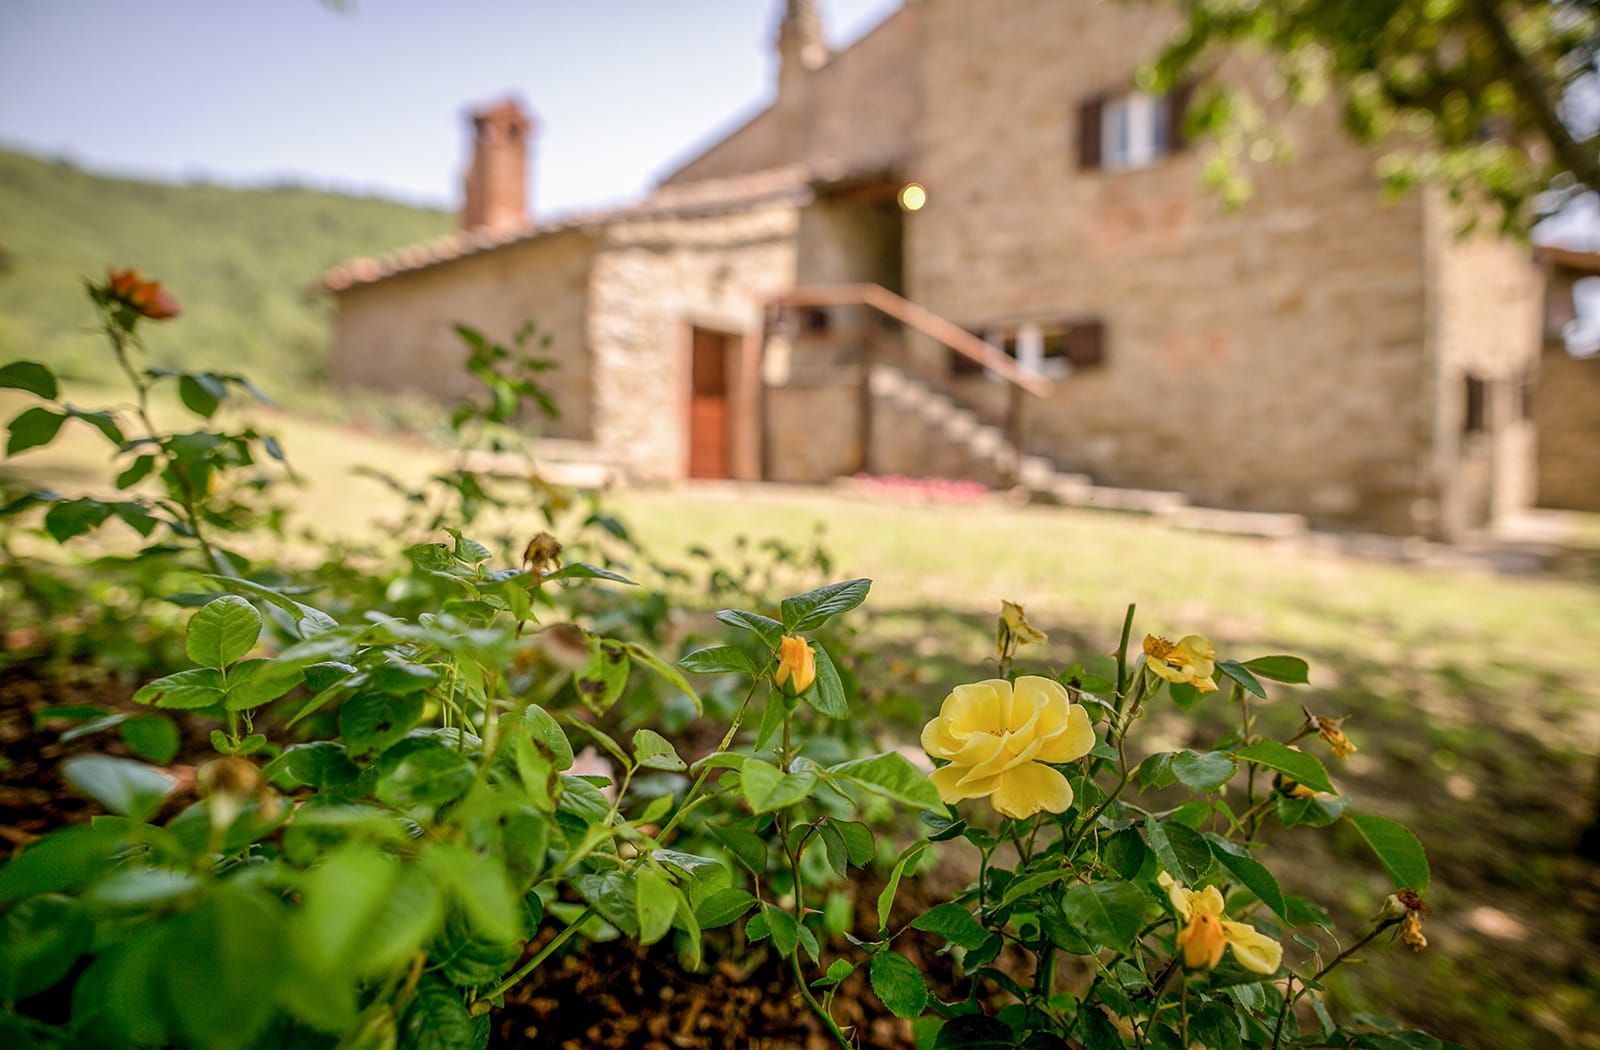 Prenota la tua vacanza in Toscana in Agriturismo a Cortona e Castiglion Fiorentino